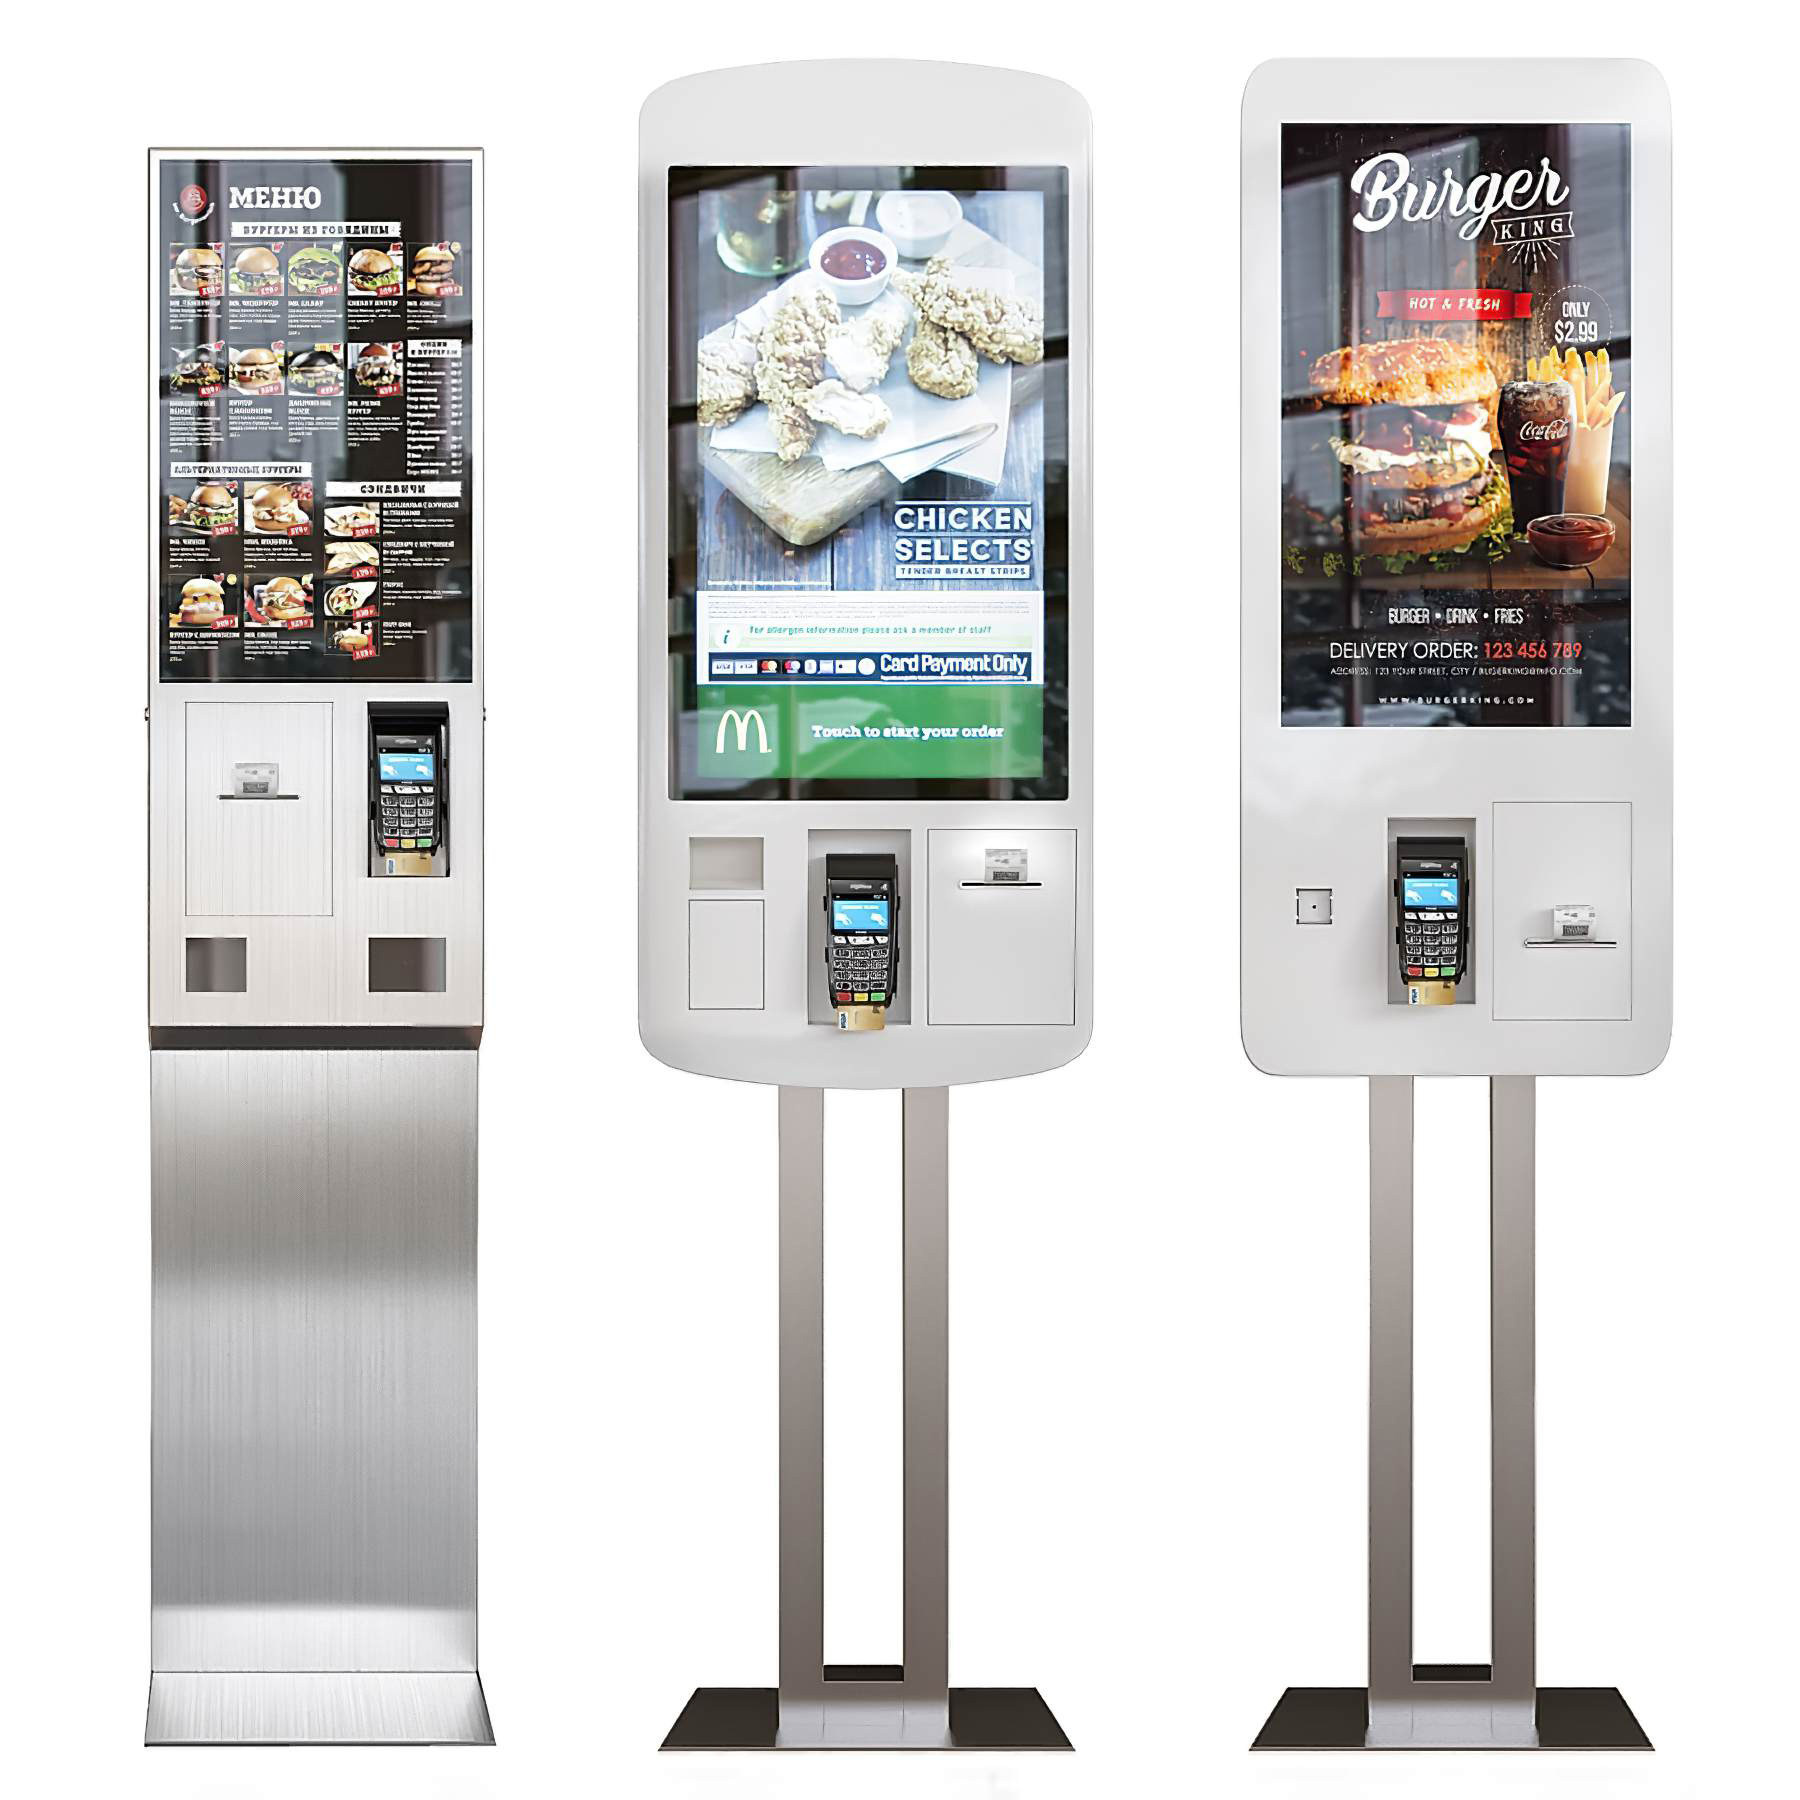 21现代点餐机,一体机,广告投放屏,产品展示多媒体屏幕3d模型下载